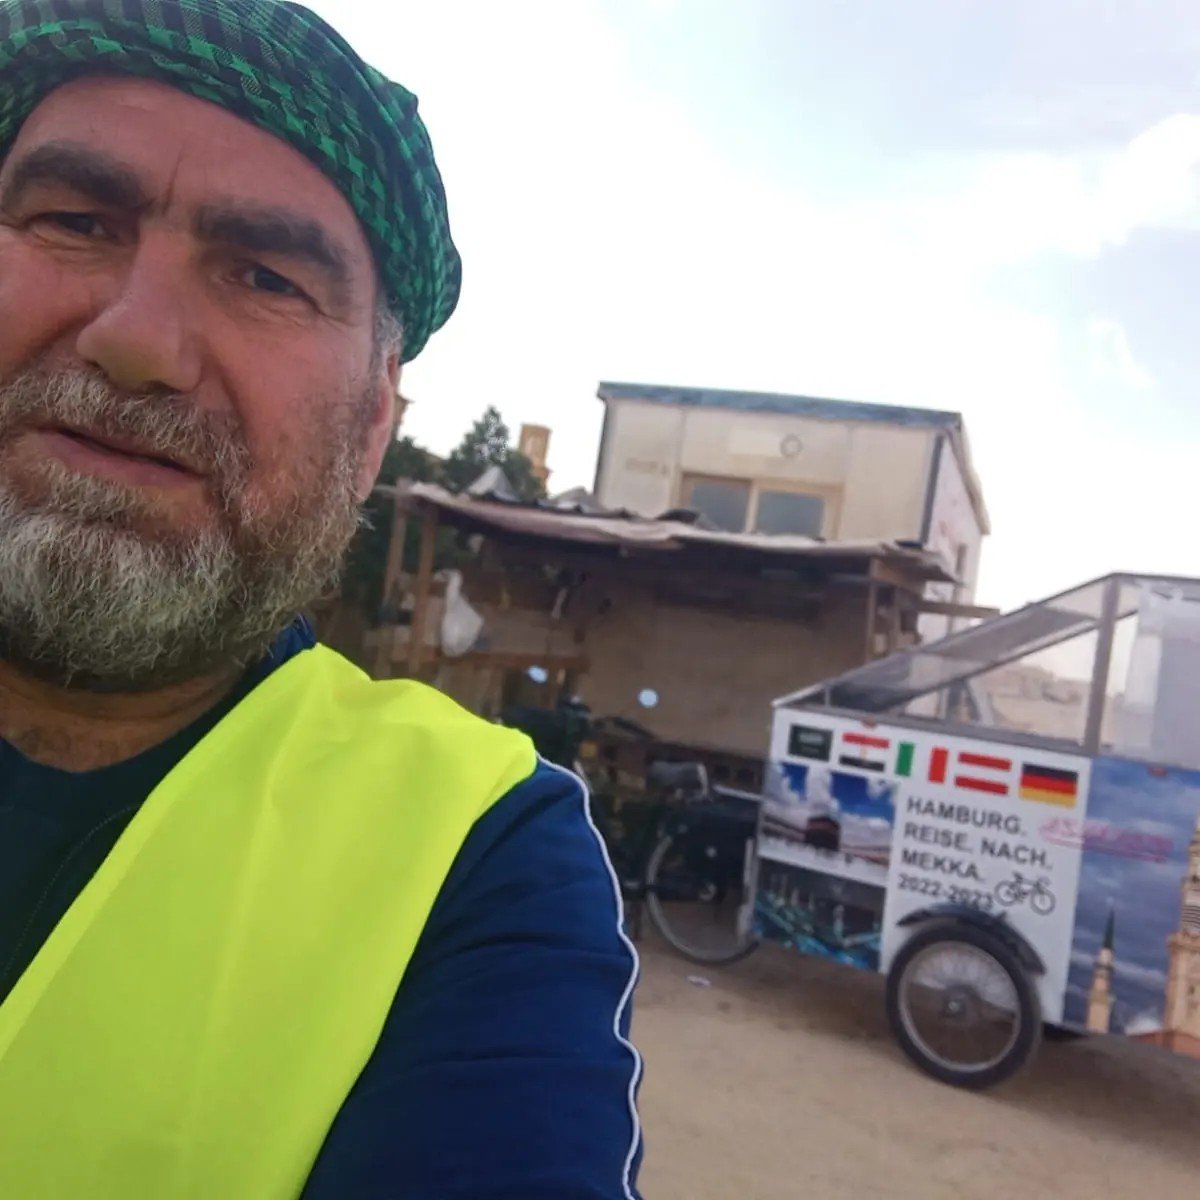 بدأ رحلته بالعجلة من ألمانيا قبل 70 يوما.. قصة لاجئ سوري توفي على مشارف مكة المكرمة 2